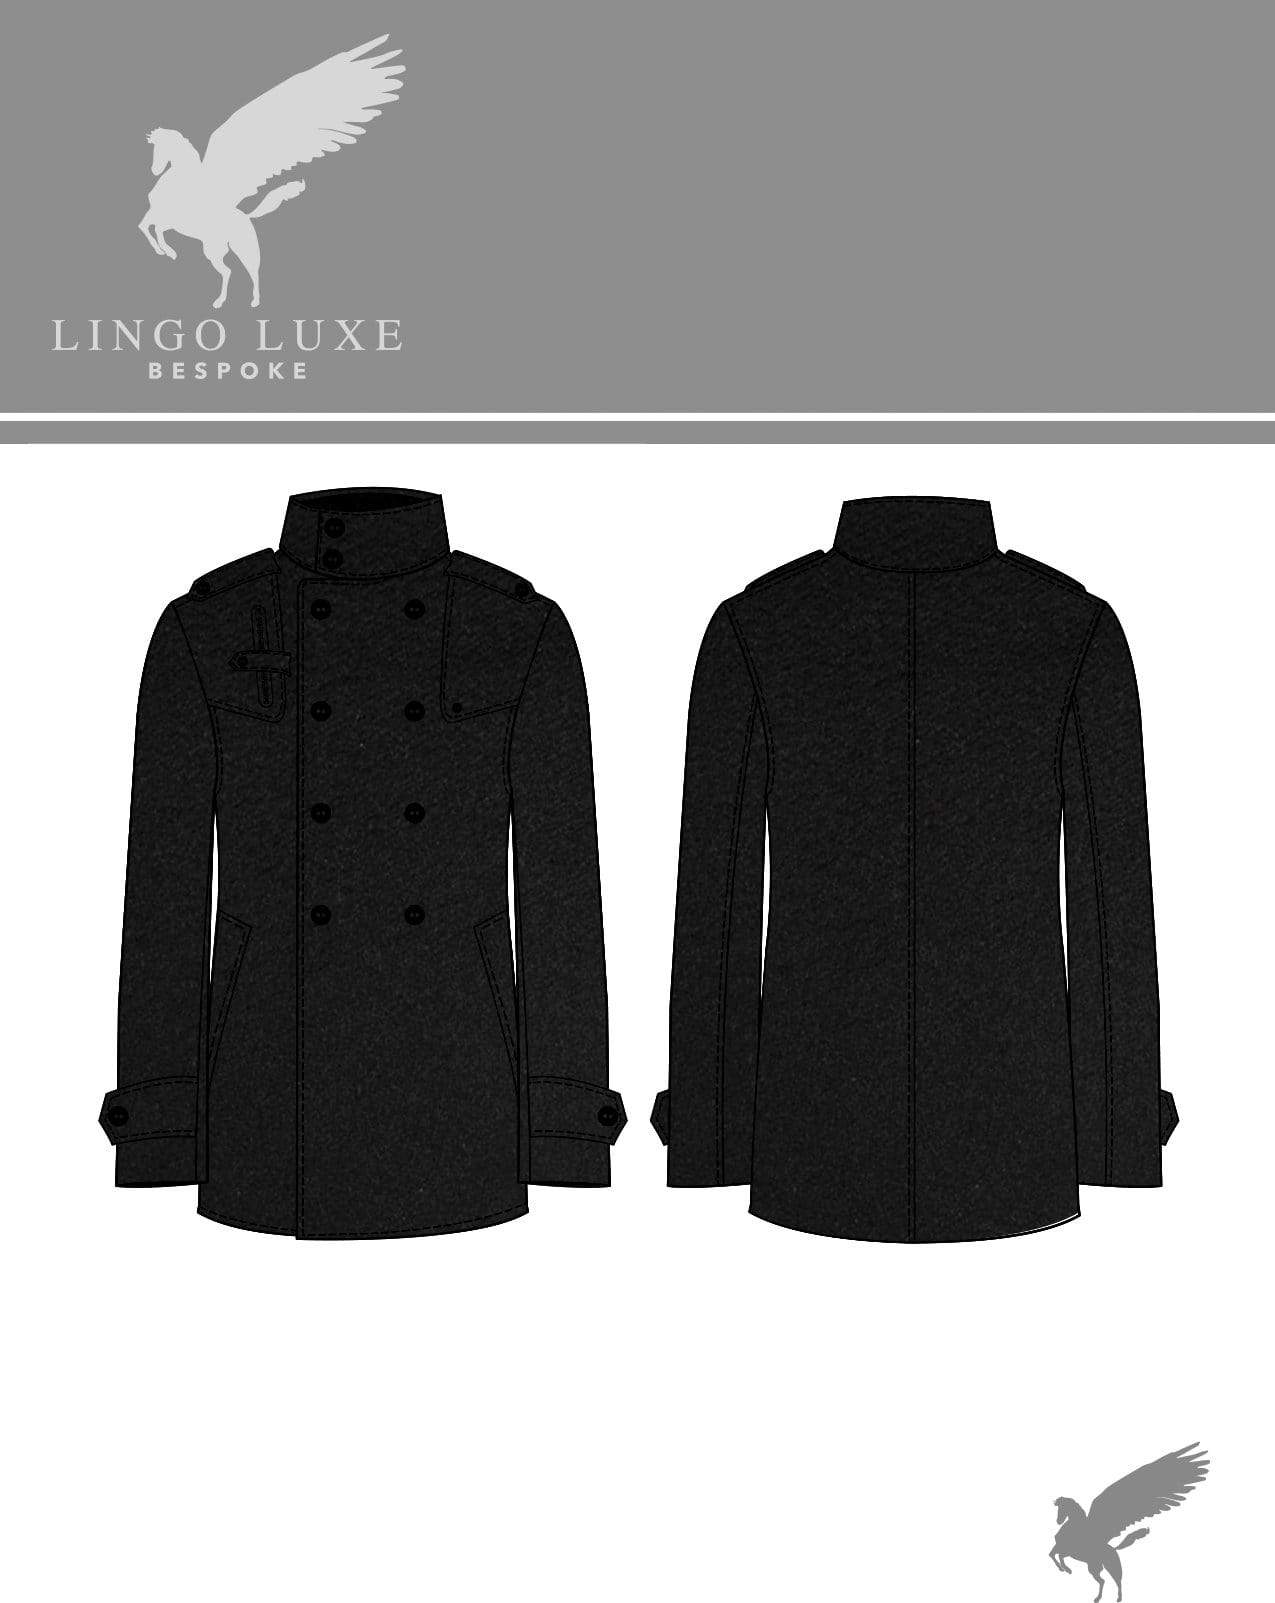 Outerwear | Lingo Luxe The Sportsman Sportcoat | Asphalt-Lingo Luxe Bespoke